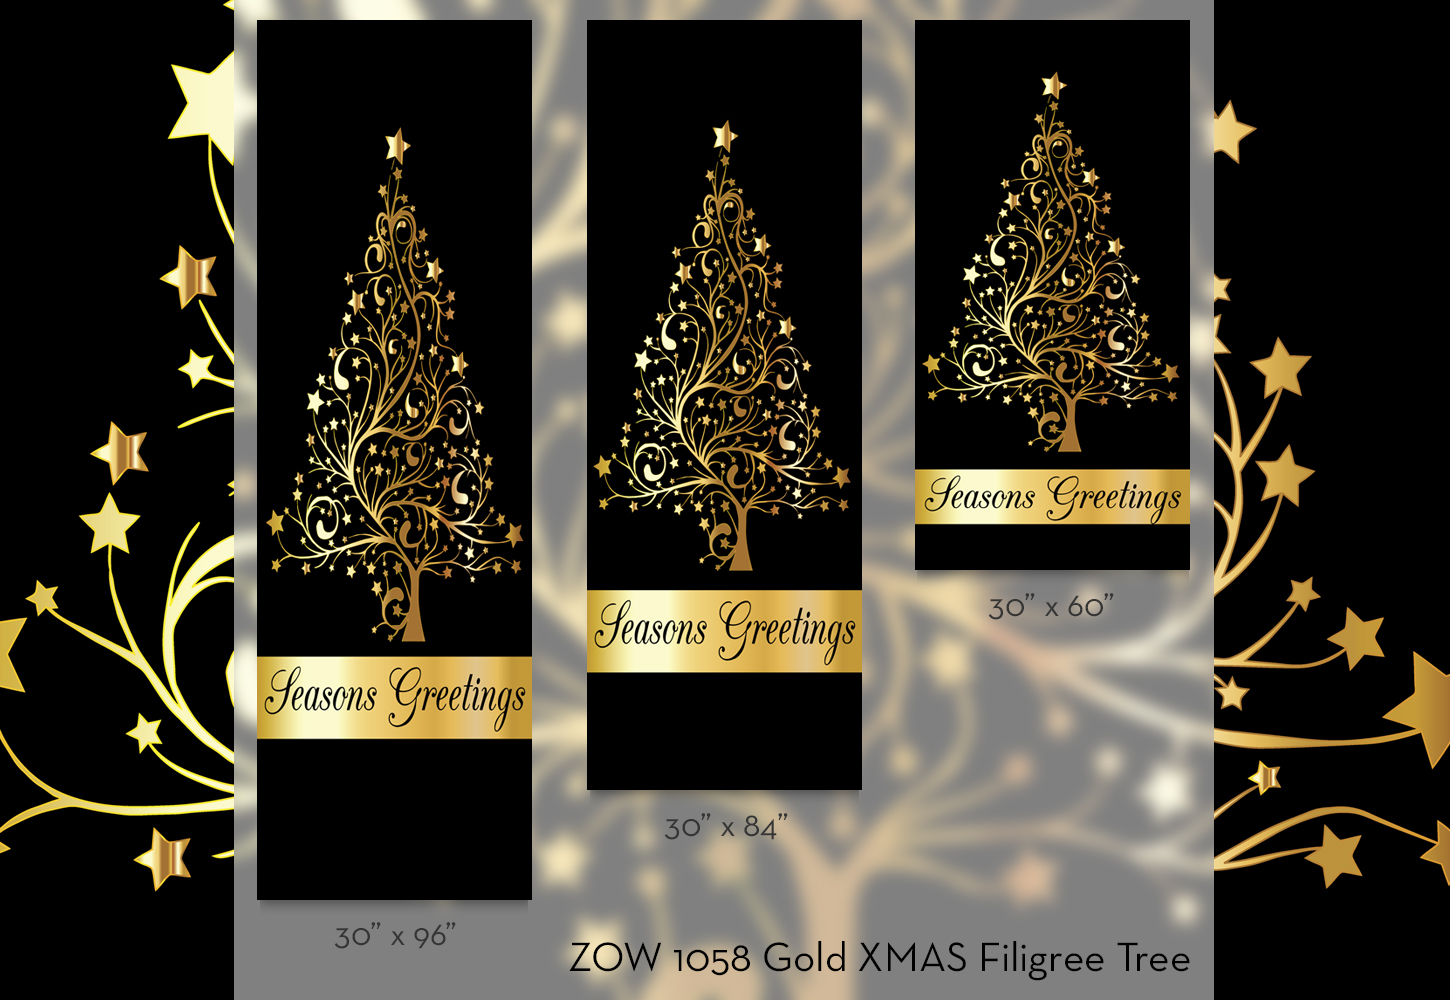 ZOW 1058 Gold XMAS Filigree Tree